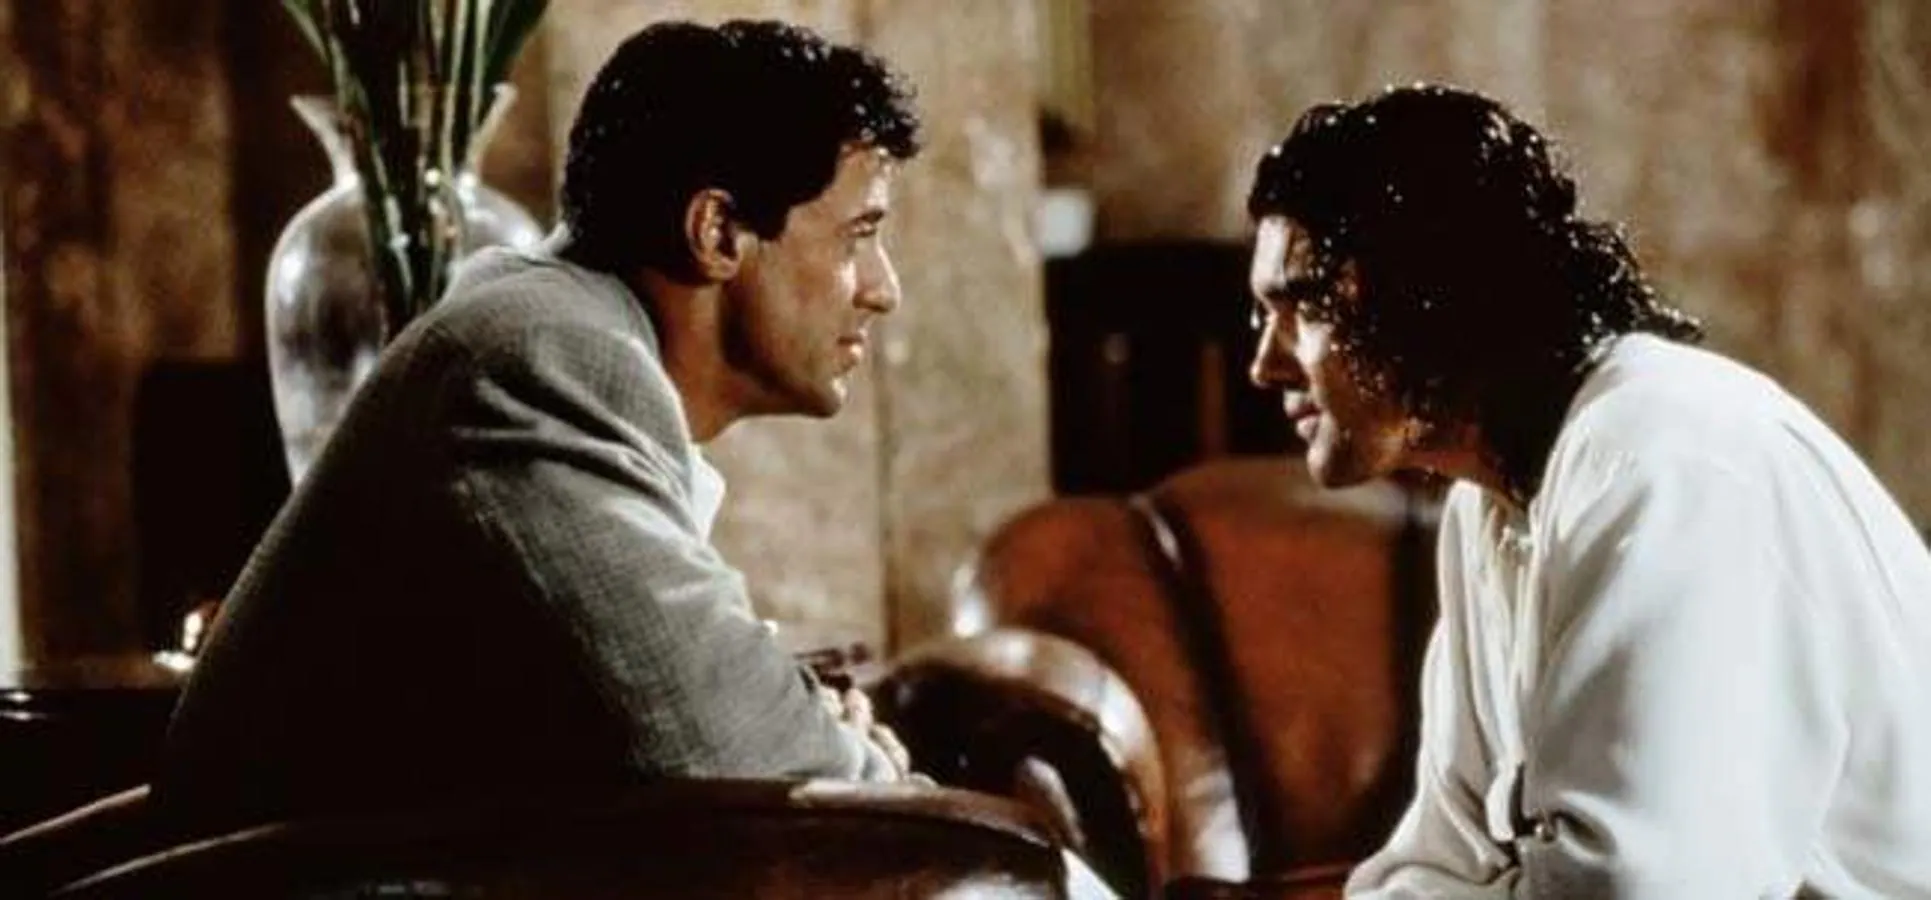 Asesinos (1995). El malagueño protagonizó junto a Sylvester Stallone este thriller plagado de acción ambientado en la Guerra Fría